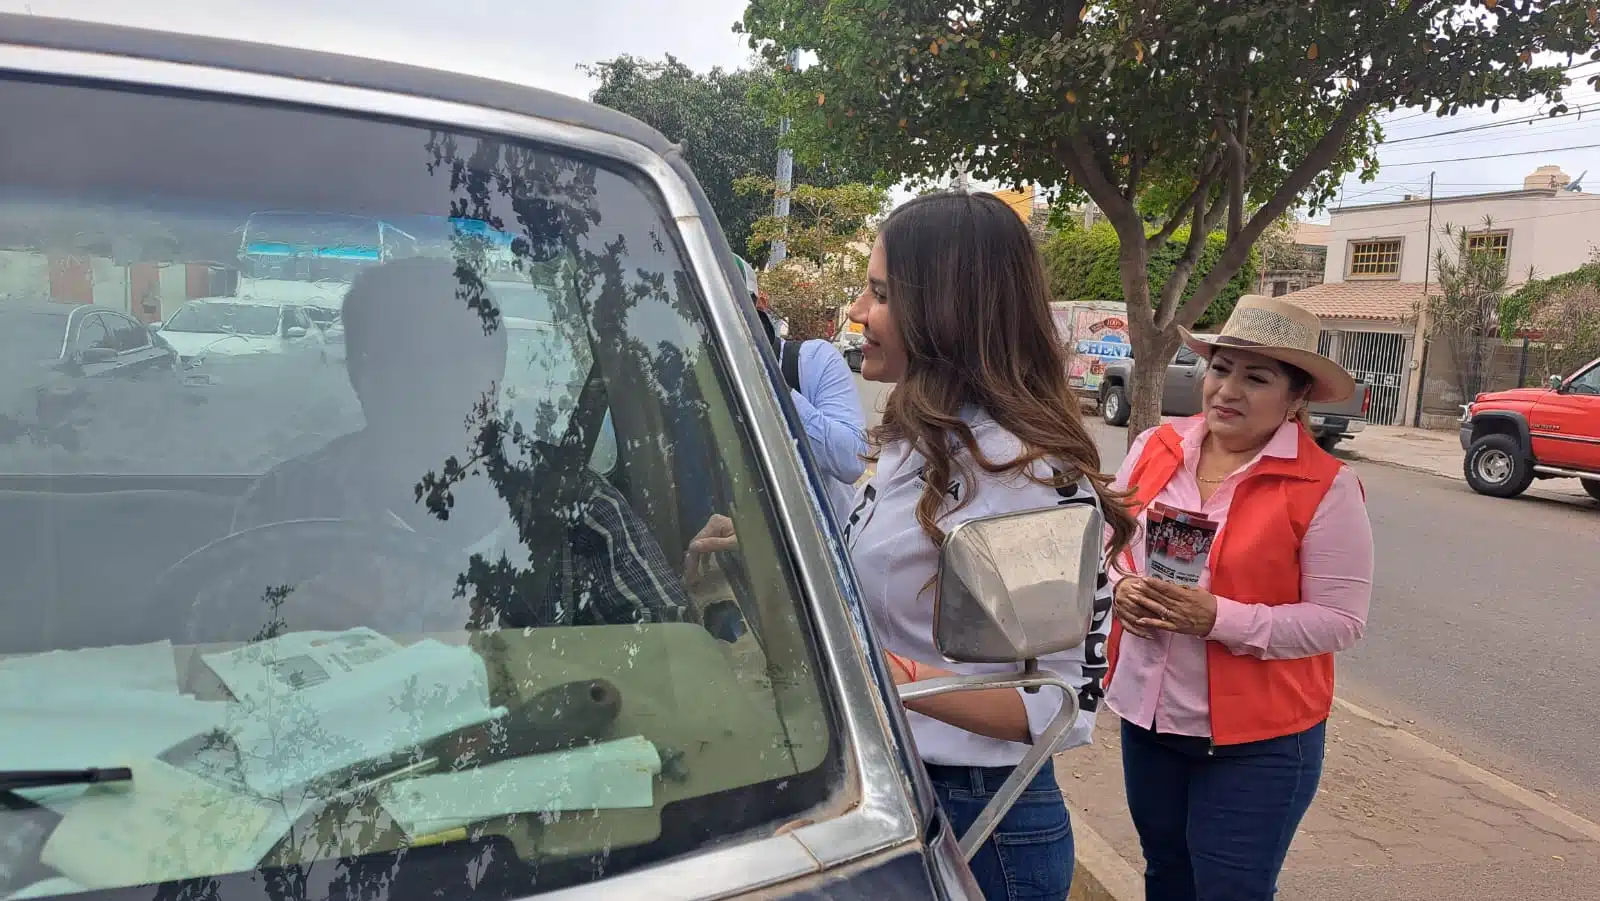 Paloma Sánchez cuestionando a conductores de Guasave sobre inquietudes de sus propuestas como candidata al Senado